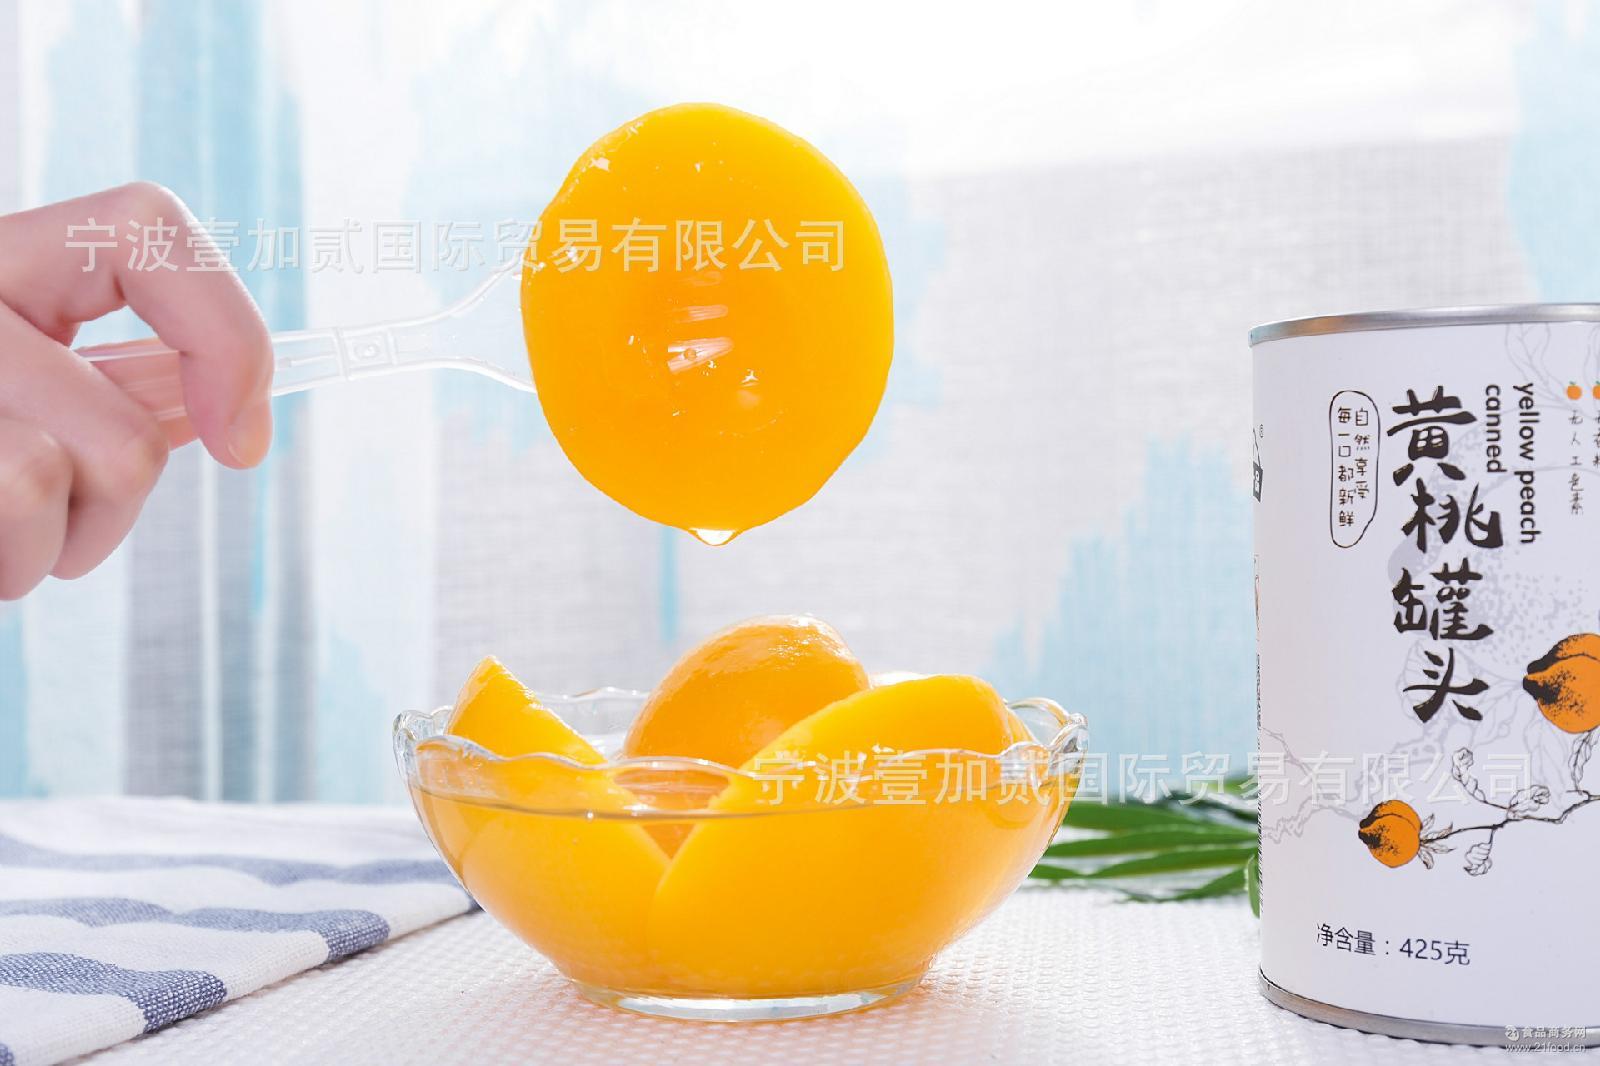 312糖水橘子罐头批发价格@湖北宜昌 买方品牌